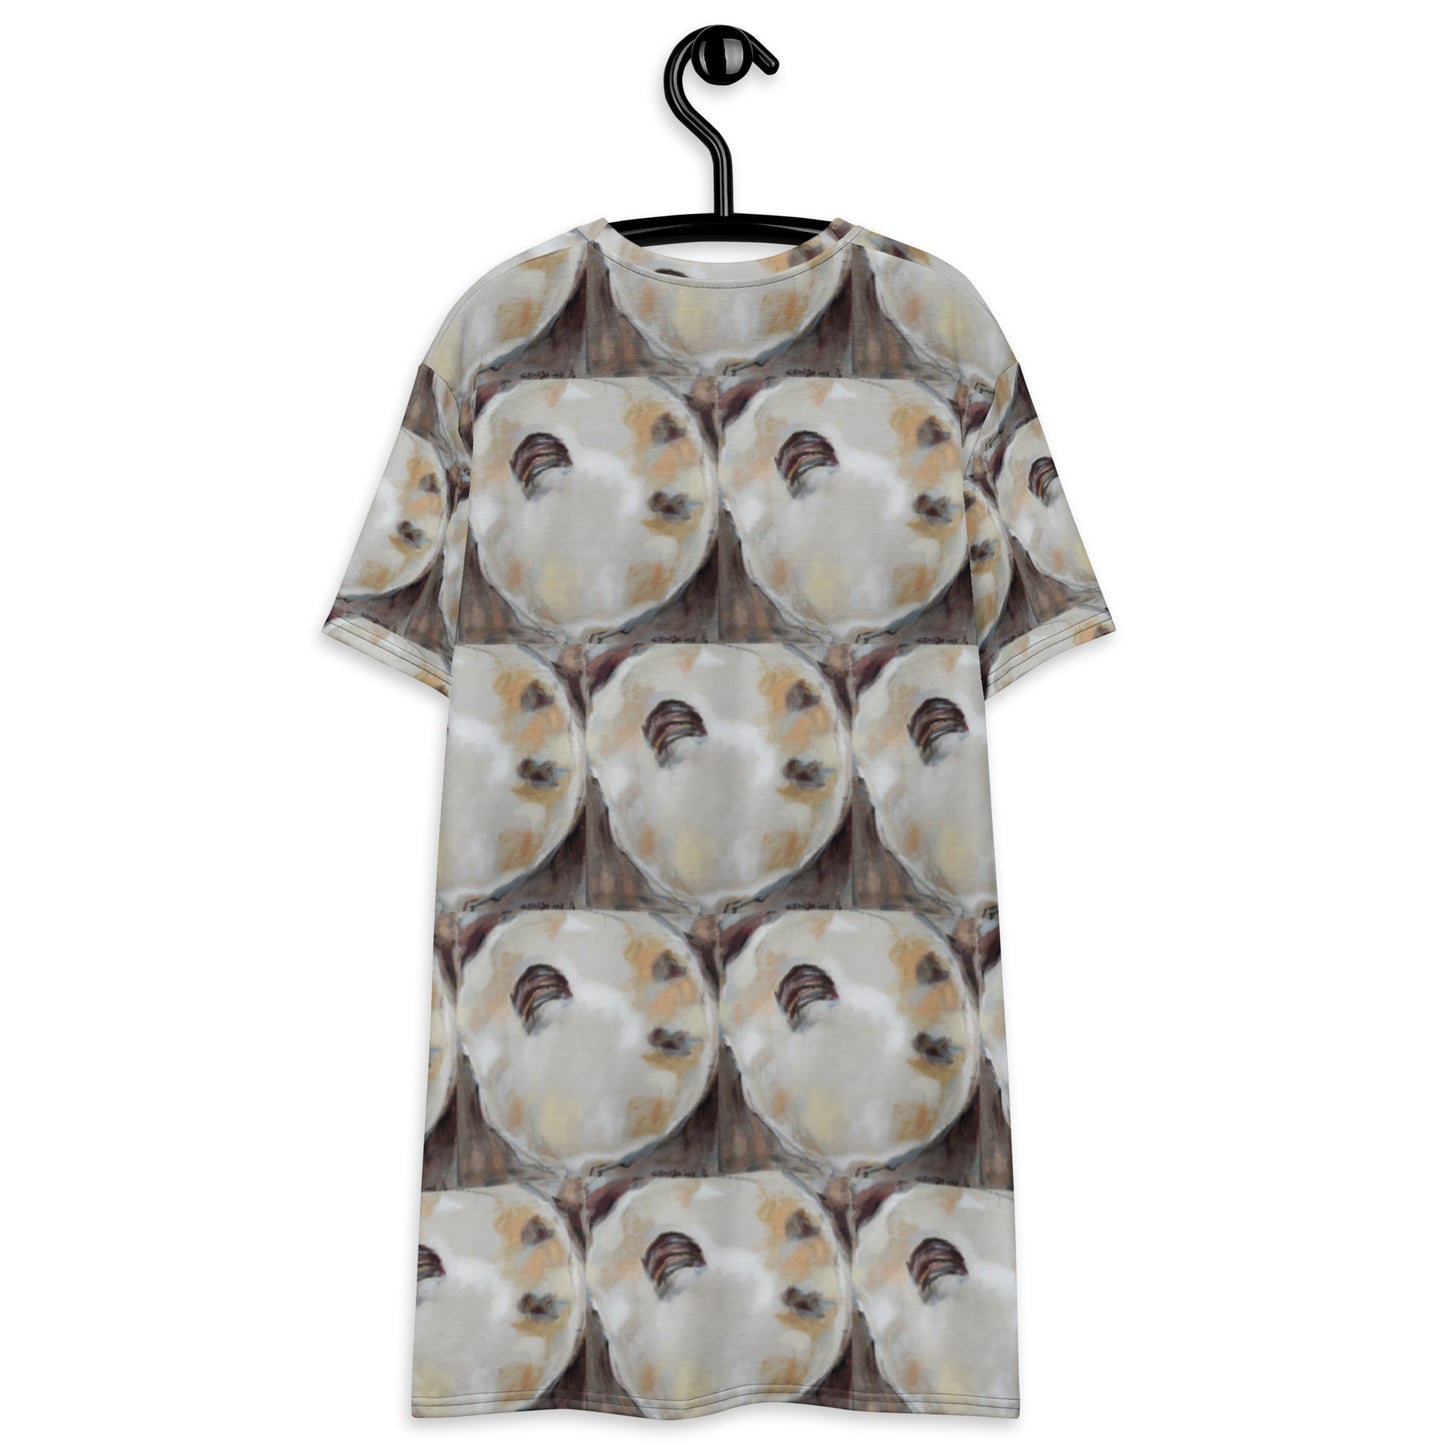 Neutral Oyster Shells T-shirt dress